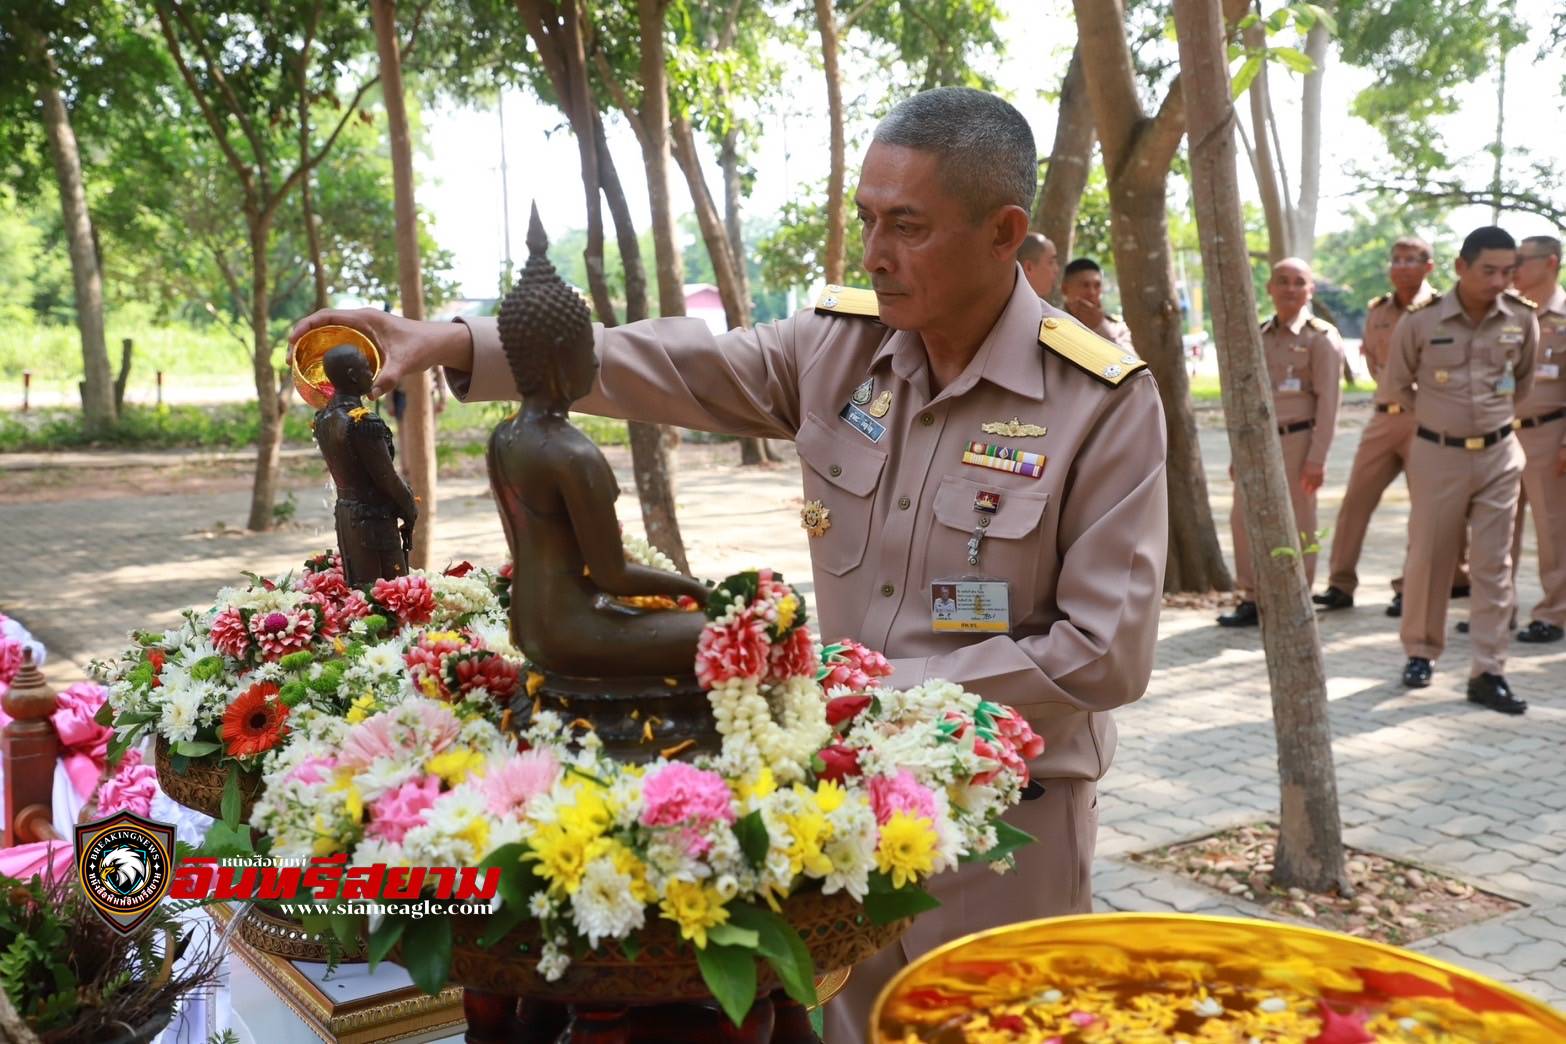 ชลบุรี-กรมสรรพาวุธทหารเรือ สรงน้ำพระ รับพรปีใหม่ไทยเพื่อเป็นสิริมงคล